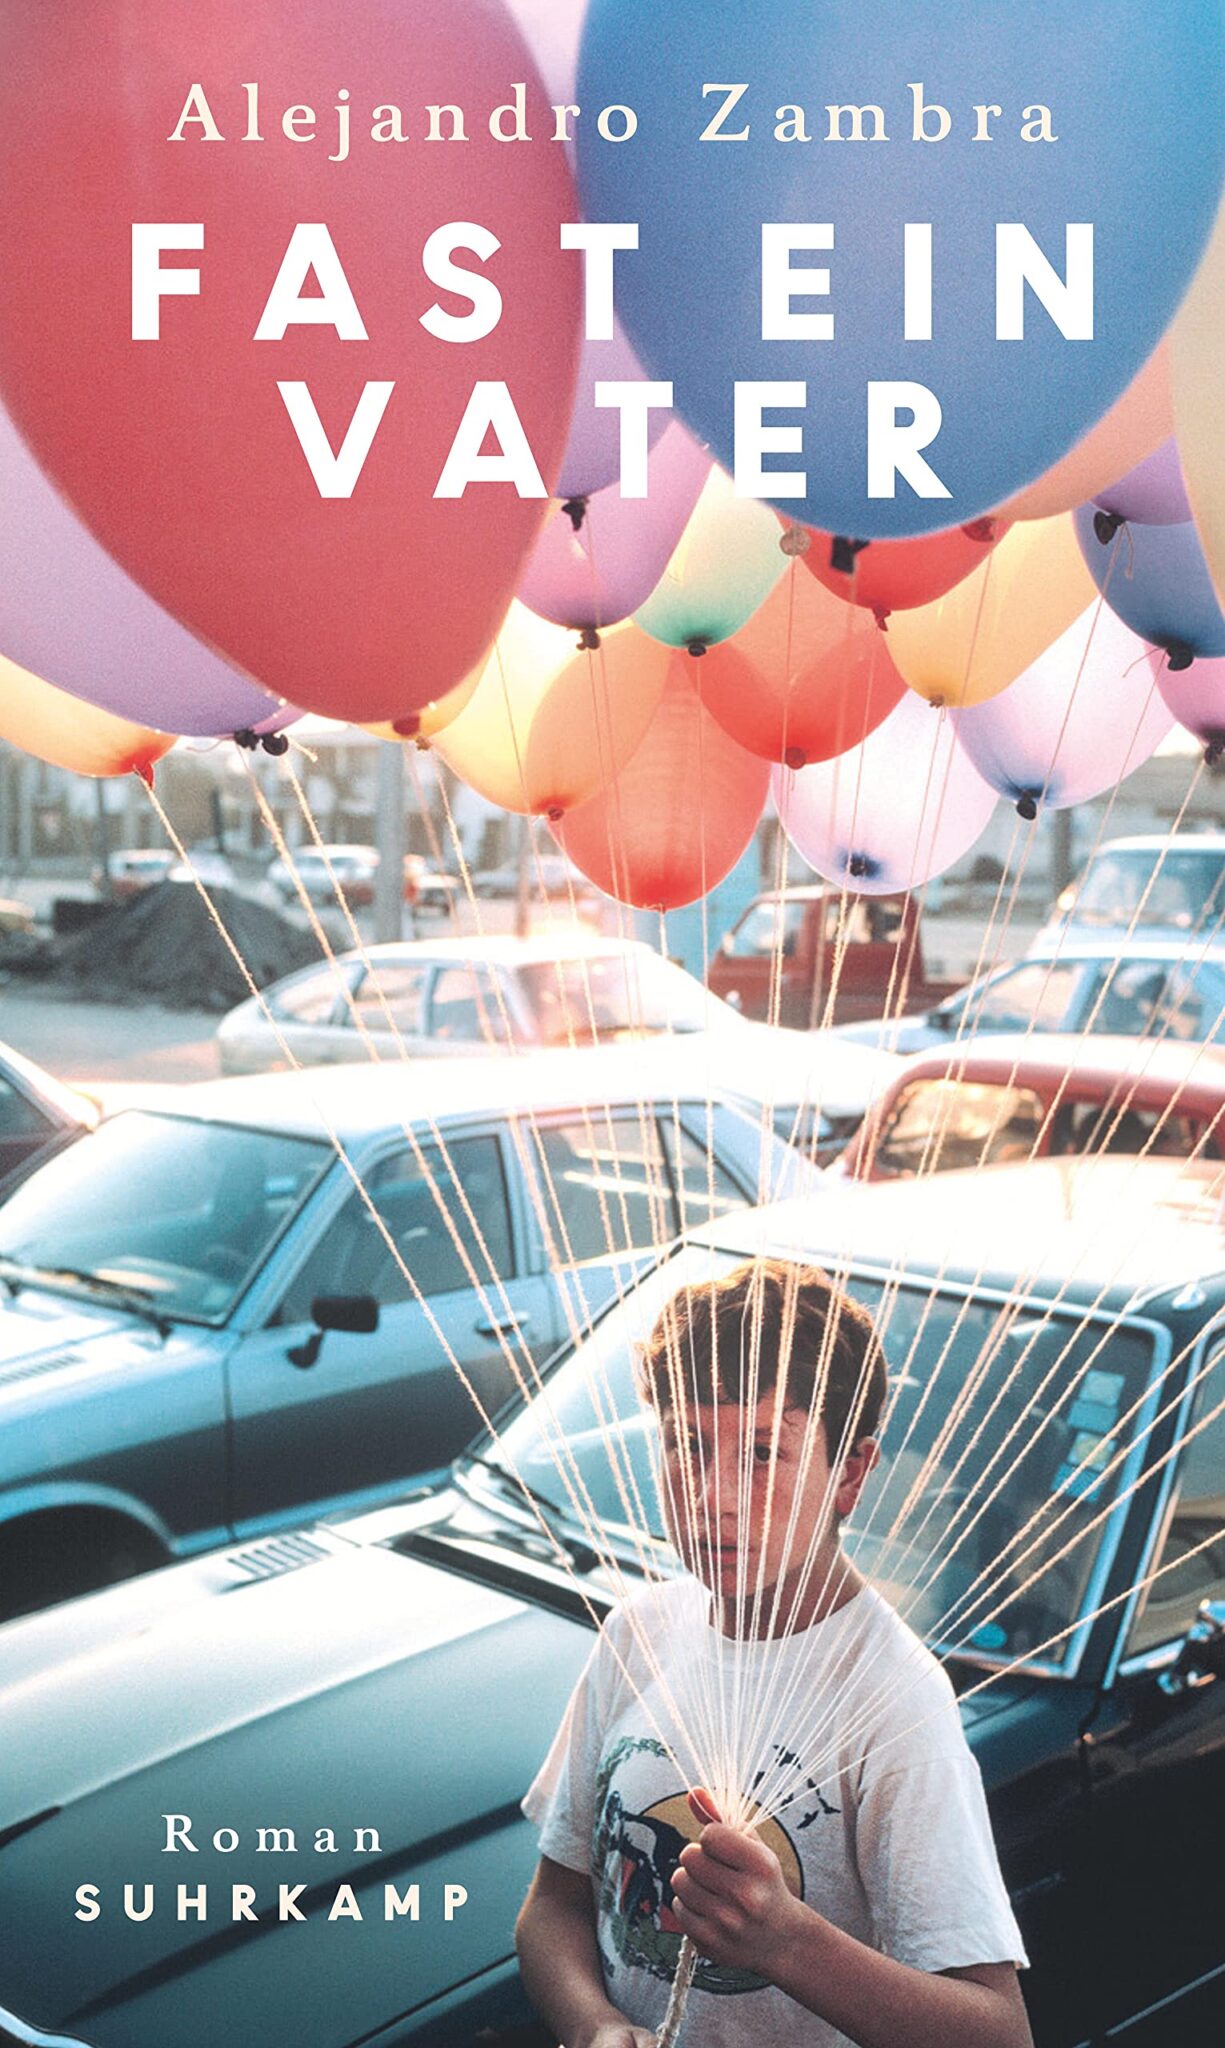 Buchcover „Fast ein Vater“ von Alejandro Zambra, Junge mit Luftballons, Autos im Hintergrund